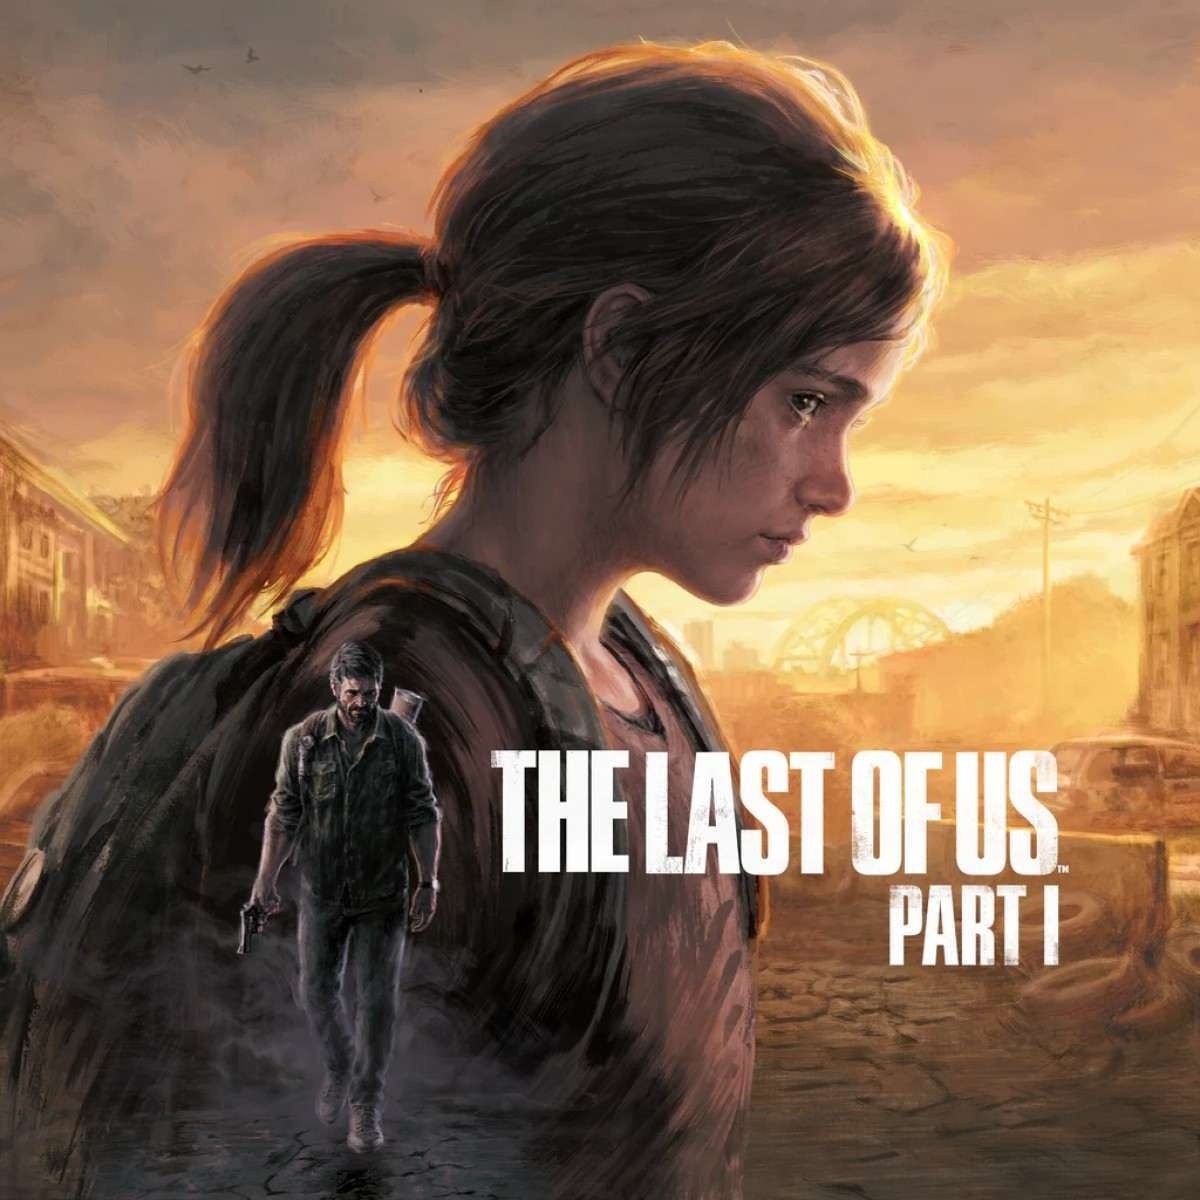 Desenvolvido pela Naughty Dog, The Last of Us Part I é um remake de The Last of Us, lançado em 2013 para PlayStation 3, e cuja versão para PC foi disponibilizada em 2023